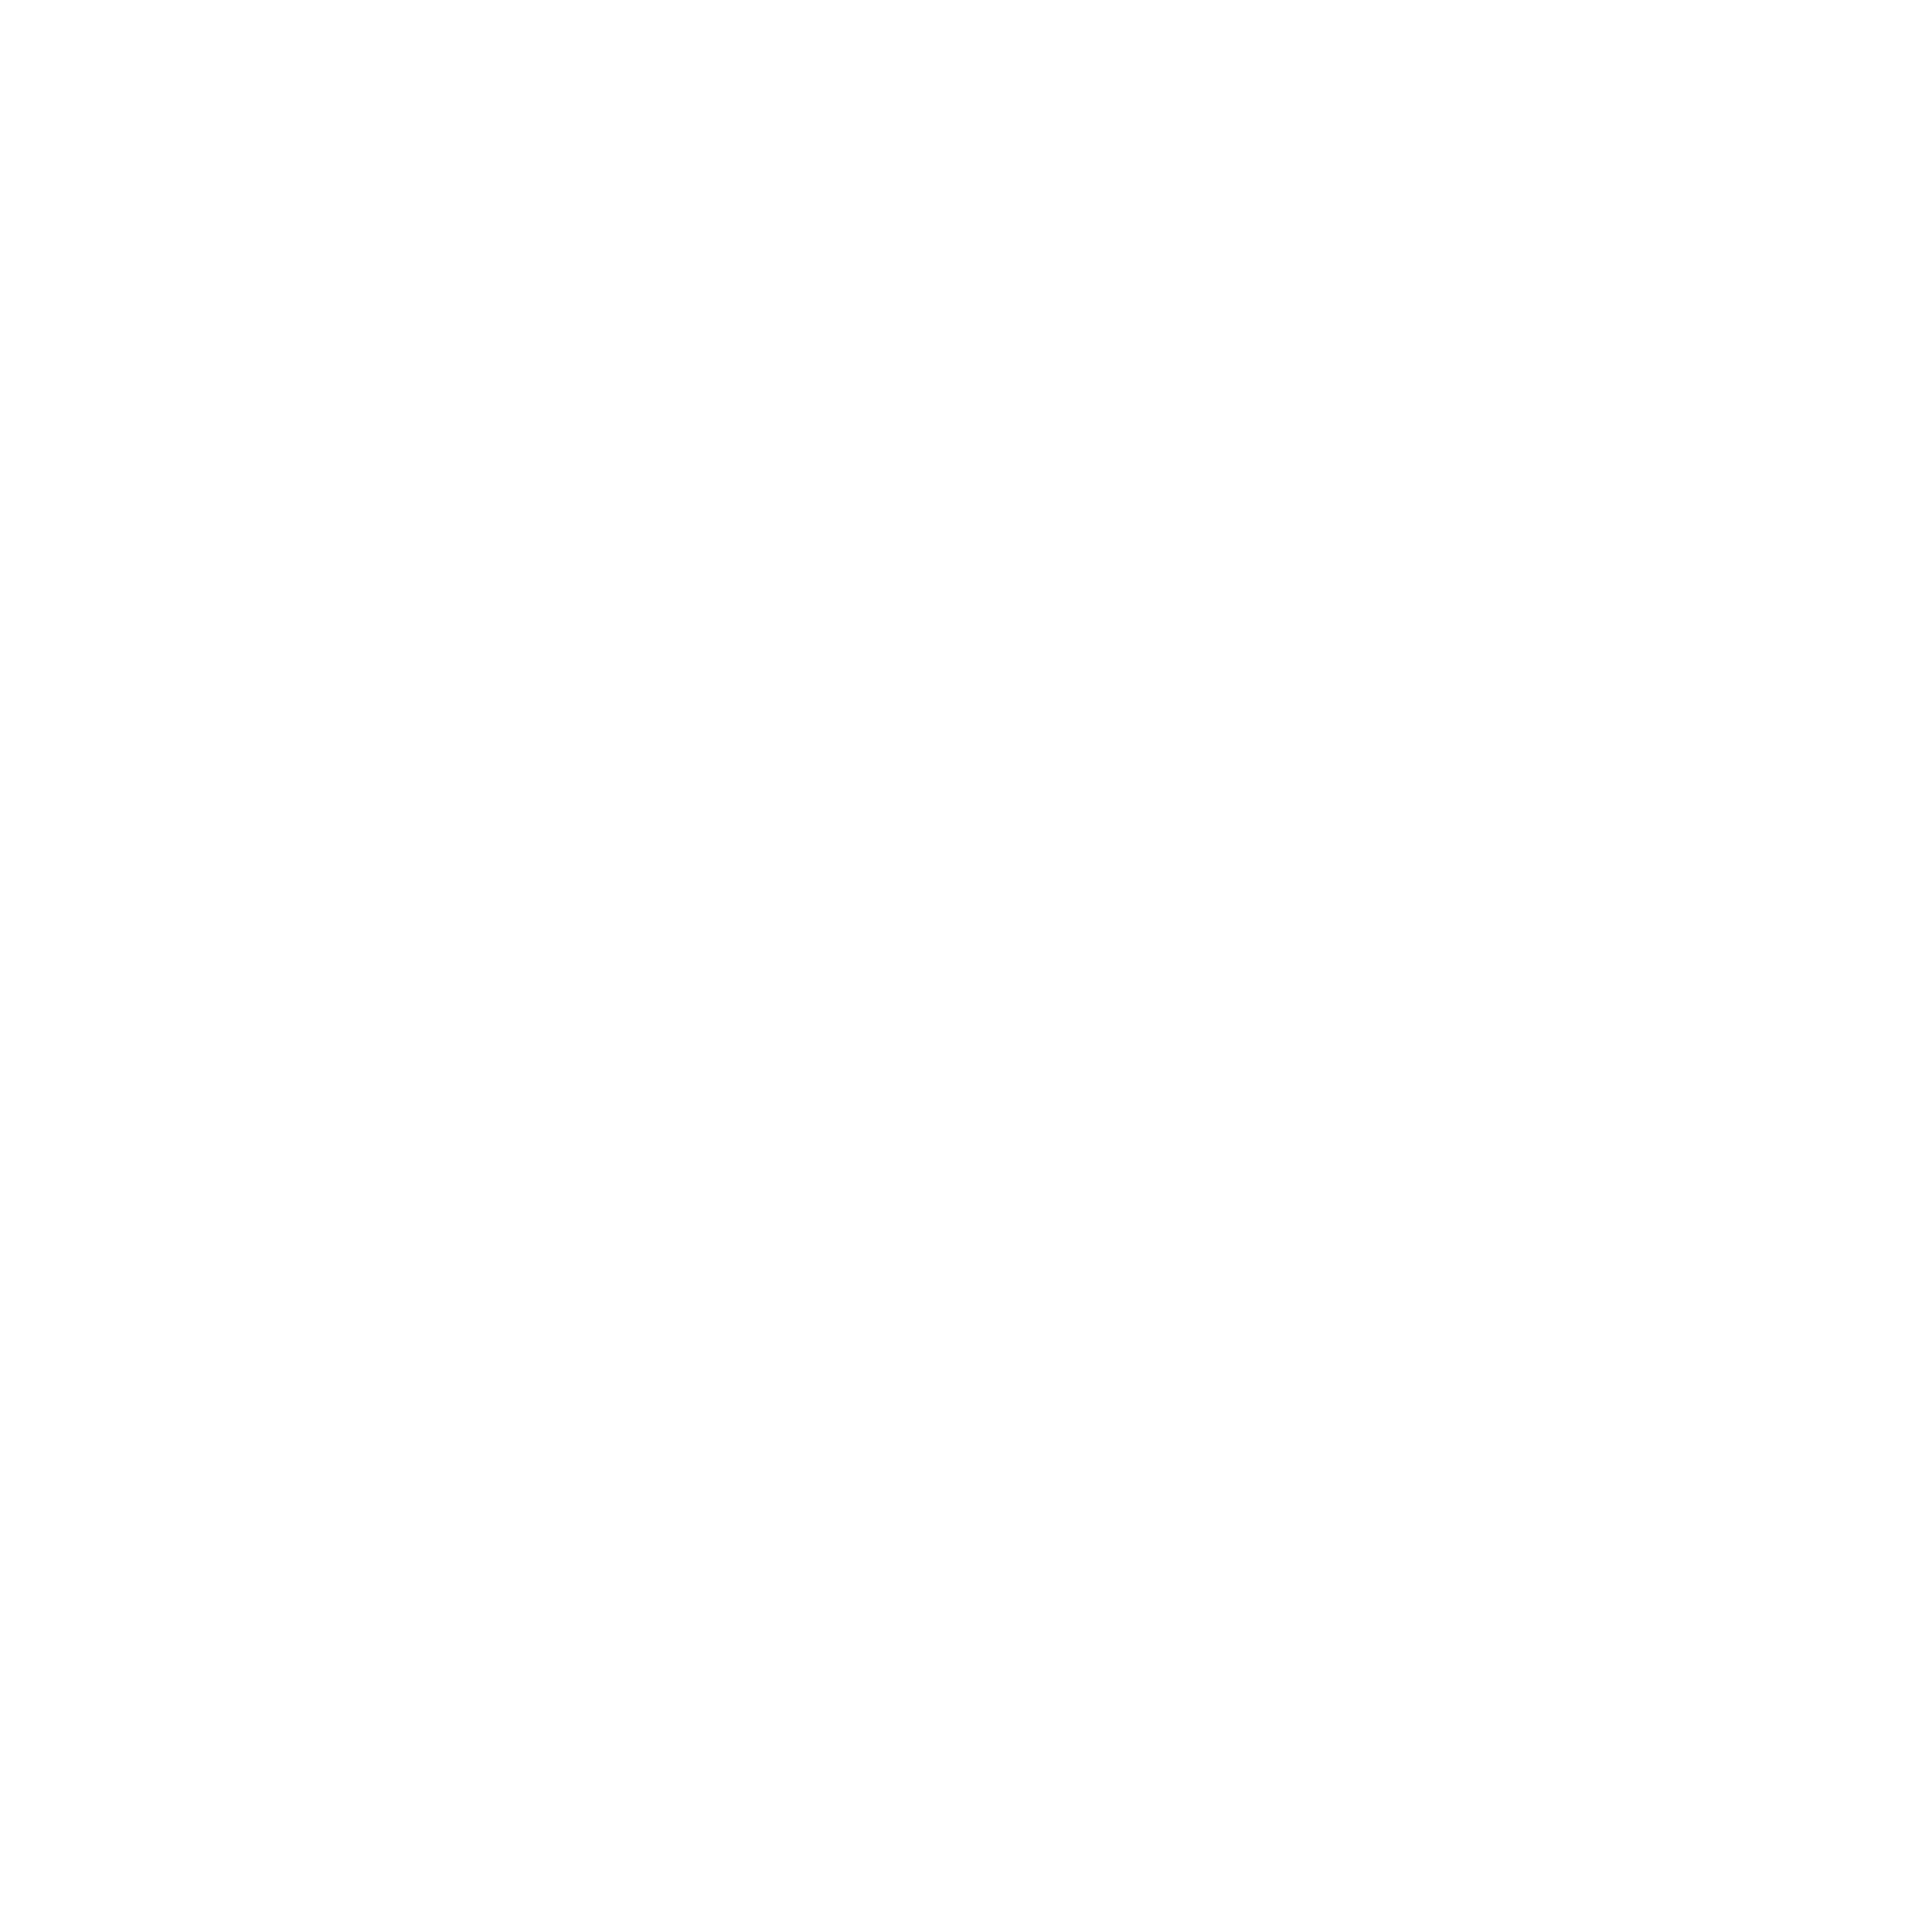 AniCura Santa Marinha Hospital Veterinário logo